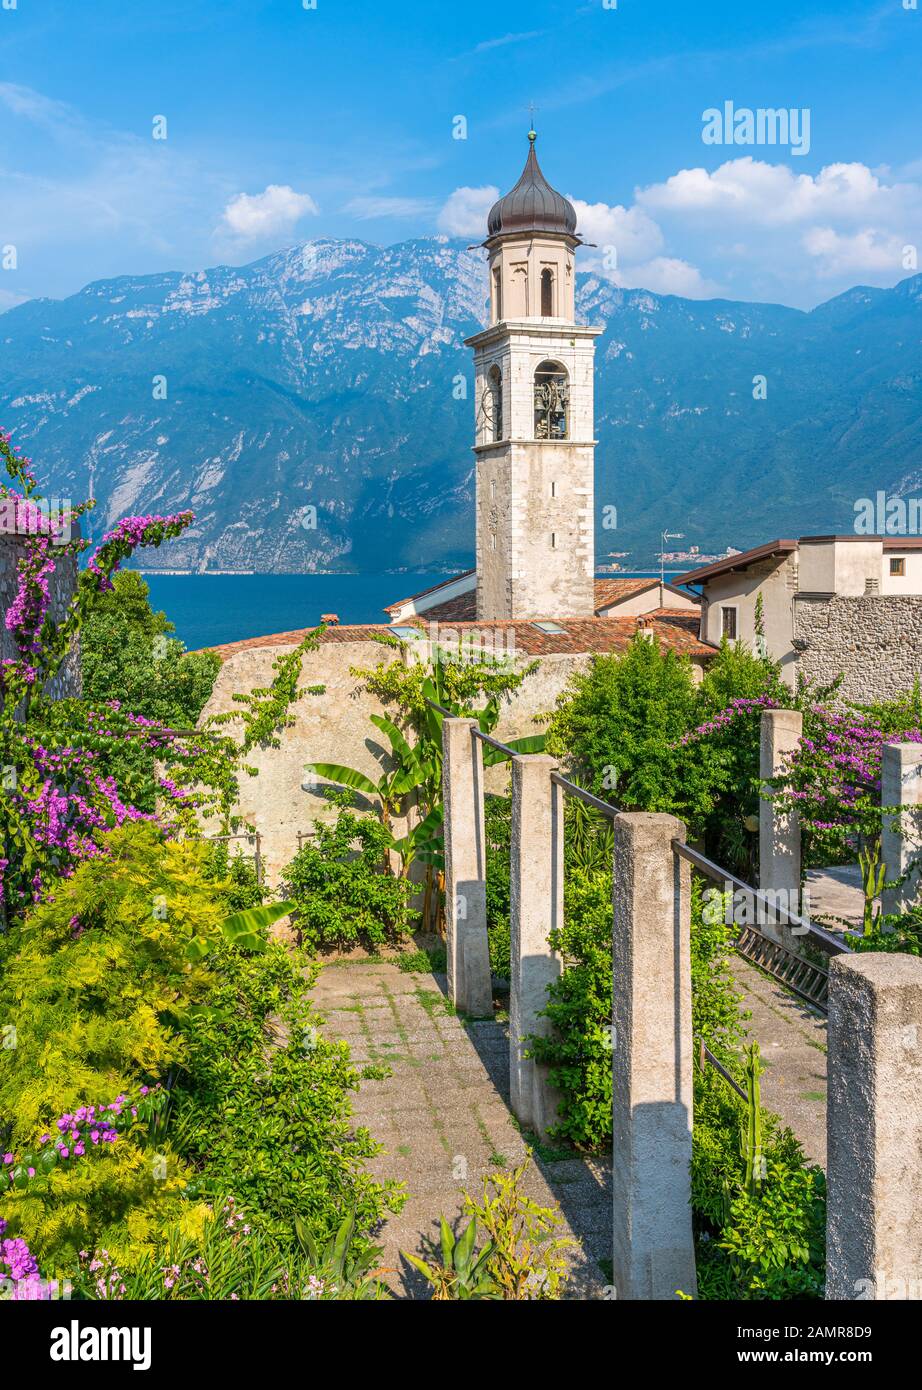 Die malerische Stadt Limone sul Garda am Gardasee. Provinz Brescia, Lombardia, Italien. Stockfoto